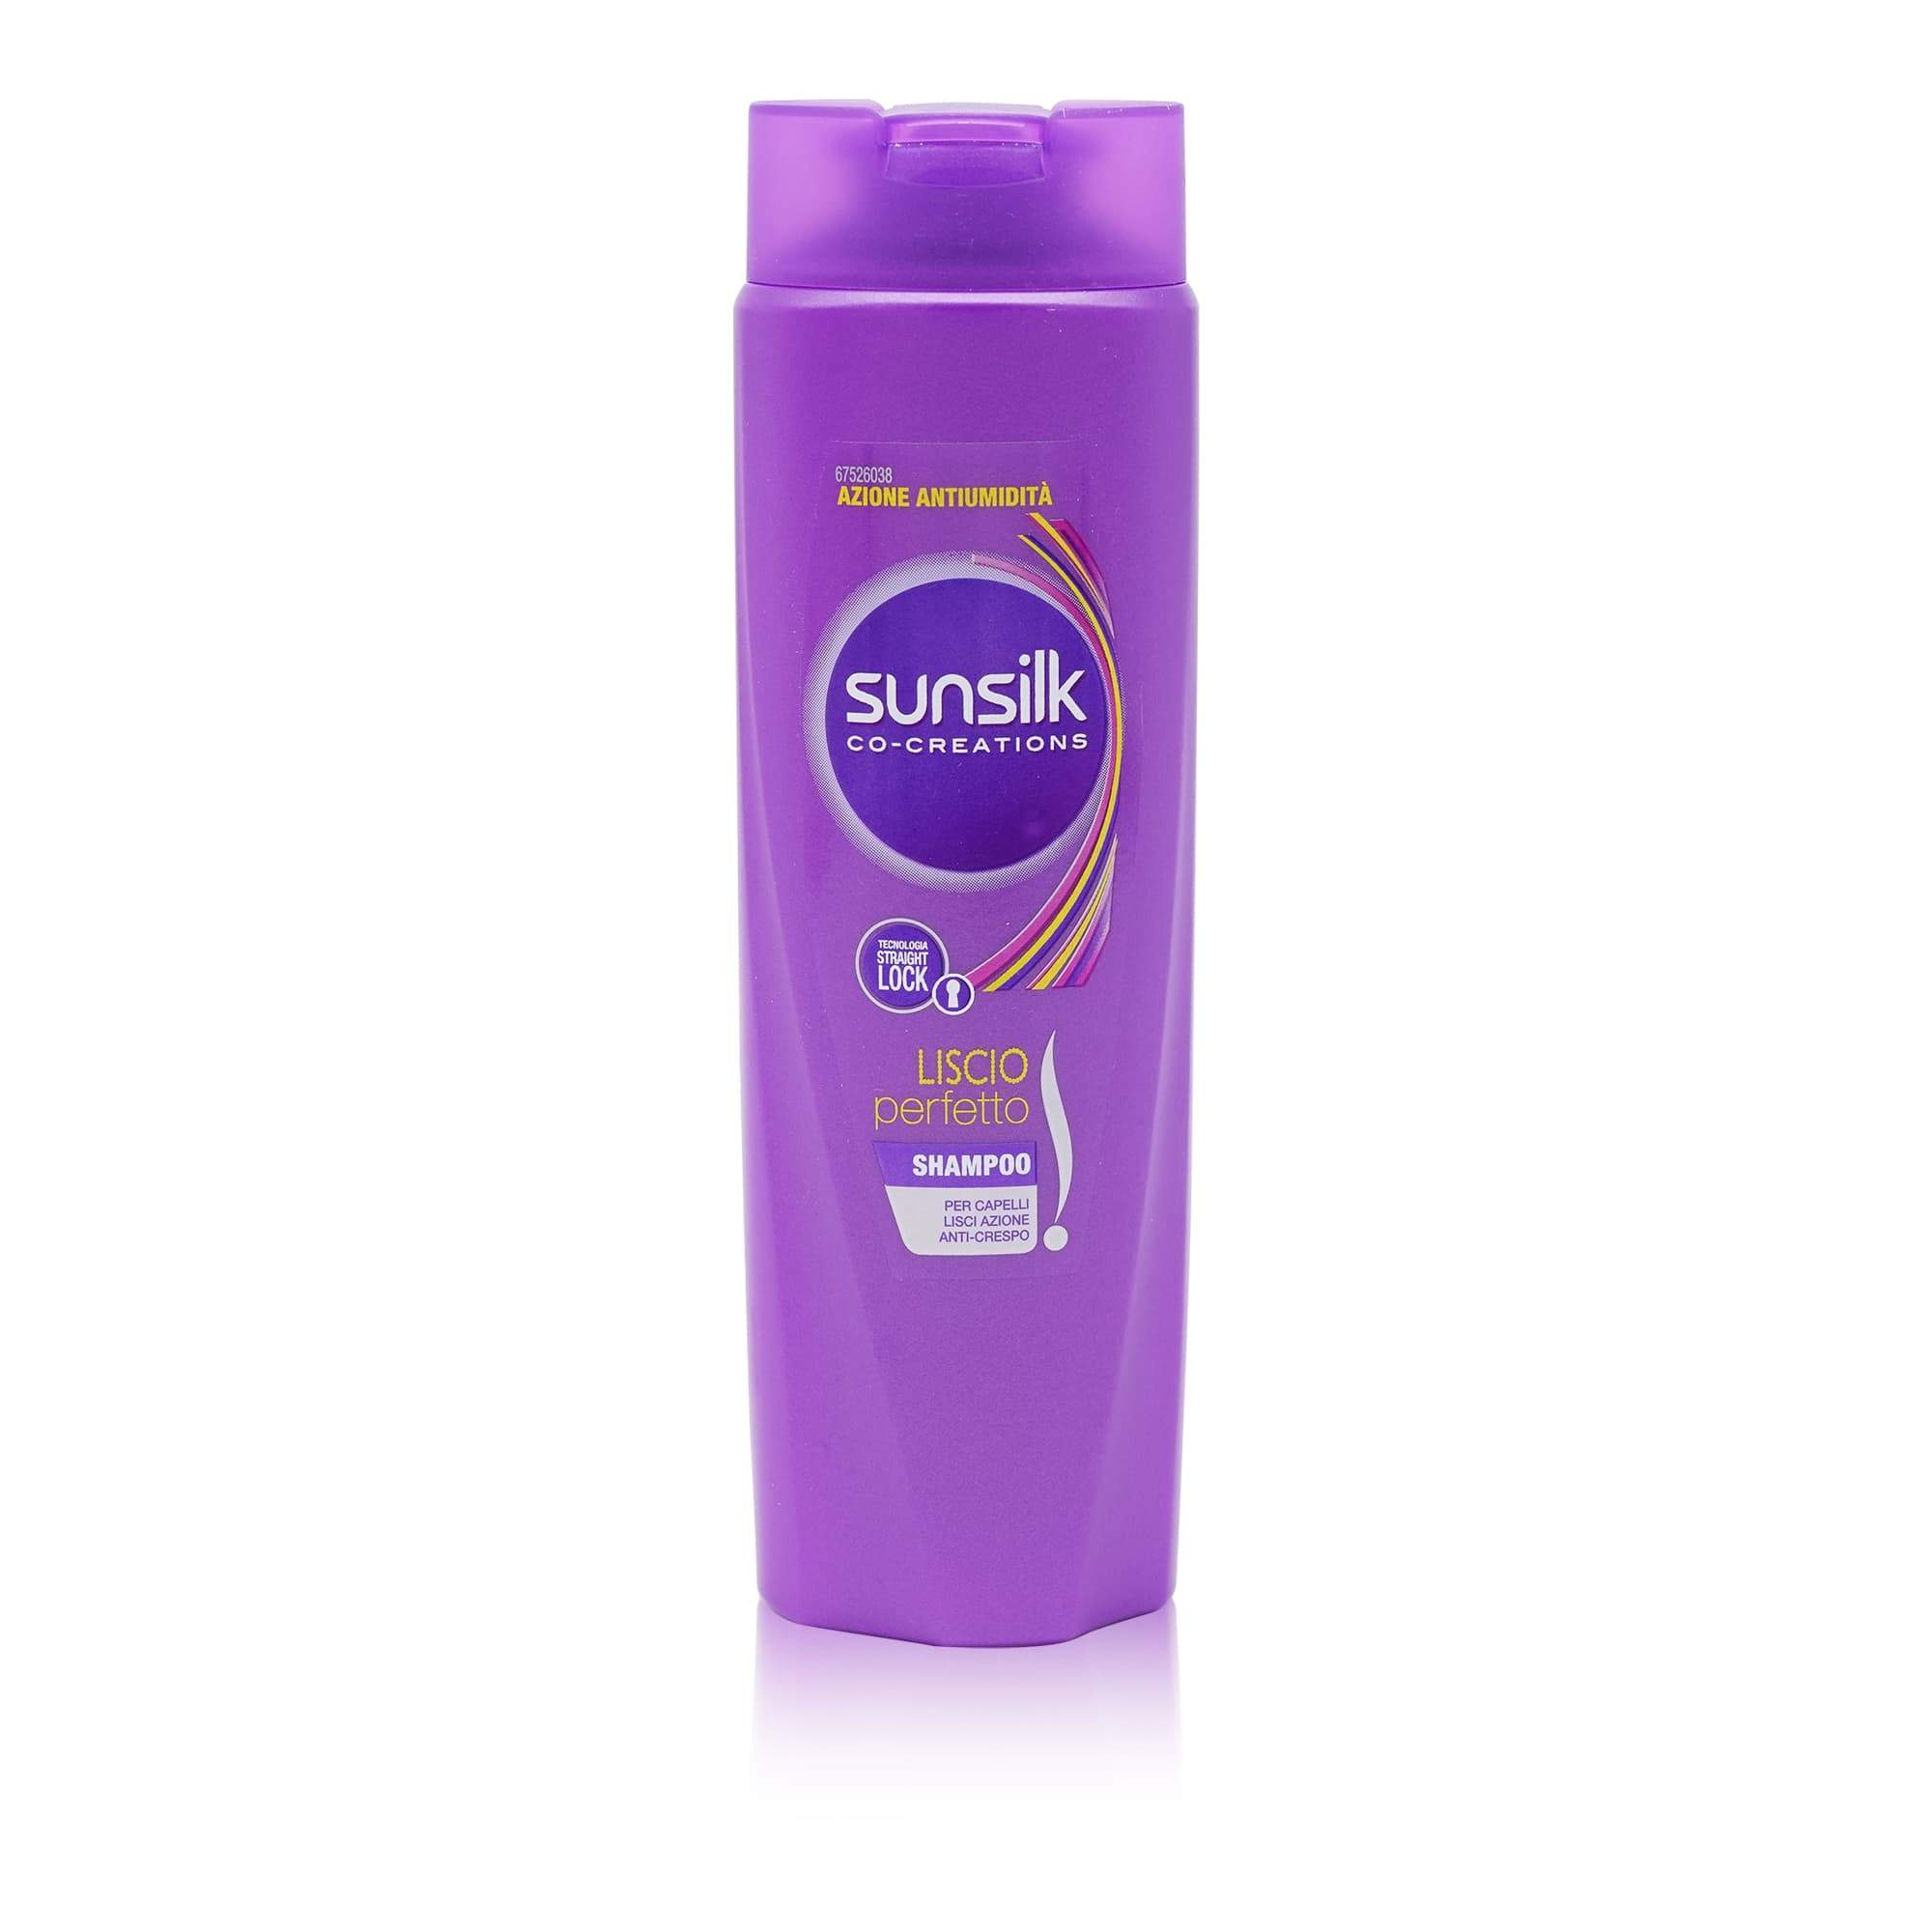 SUNSILK Shampoo Liscio perfetto – Shampoo für glattes Haar - 0,250l - italienisch-einkaufen.de